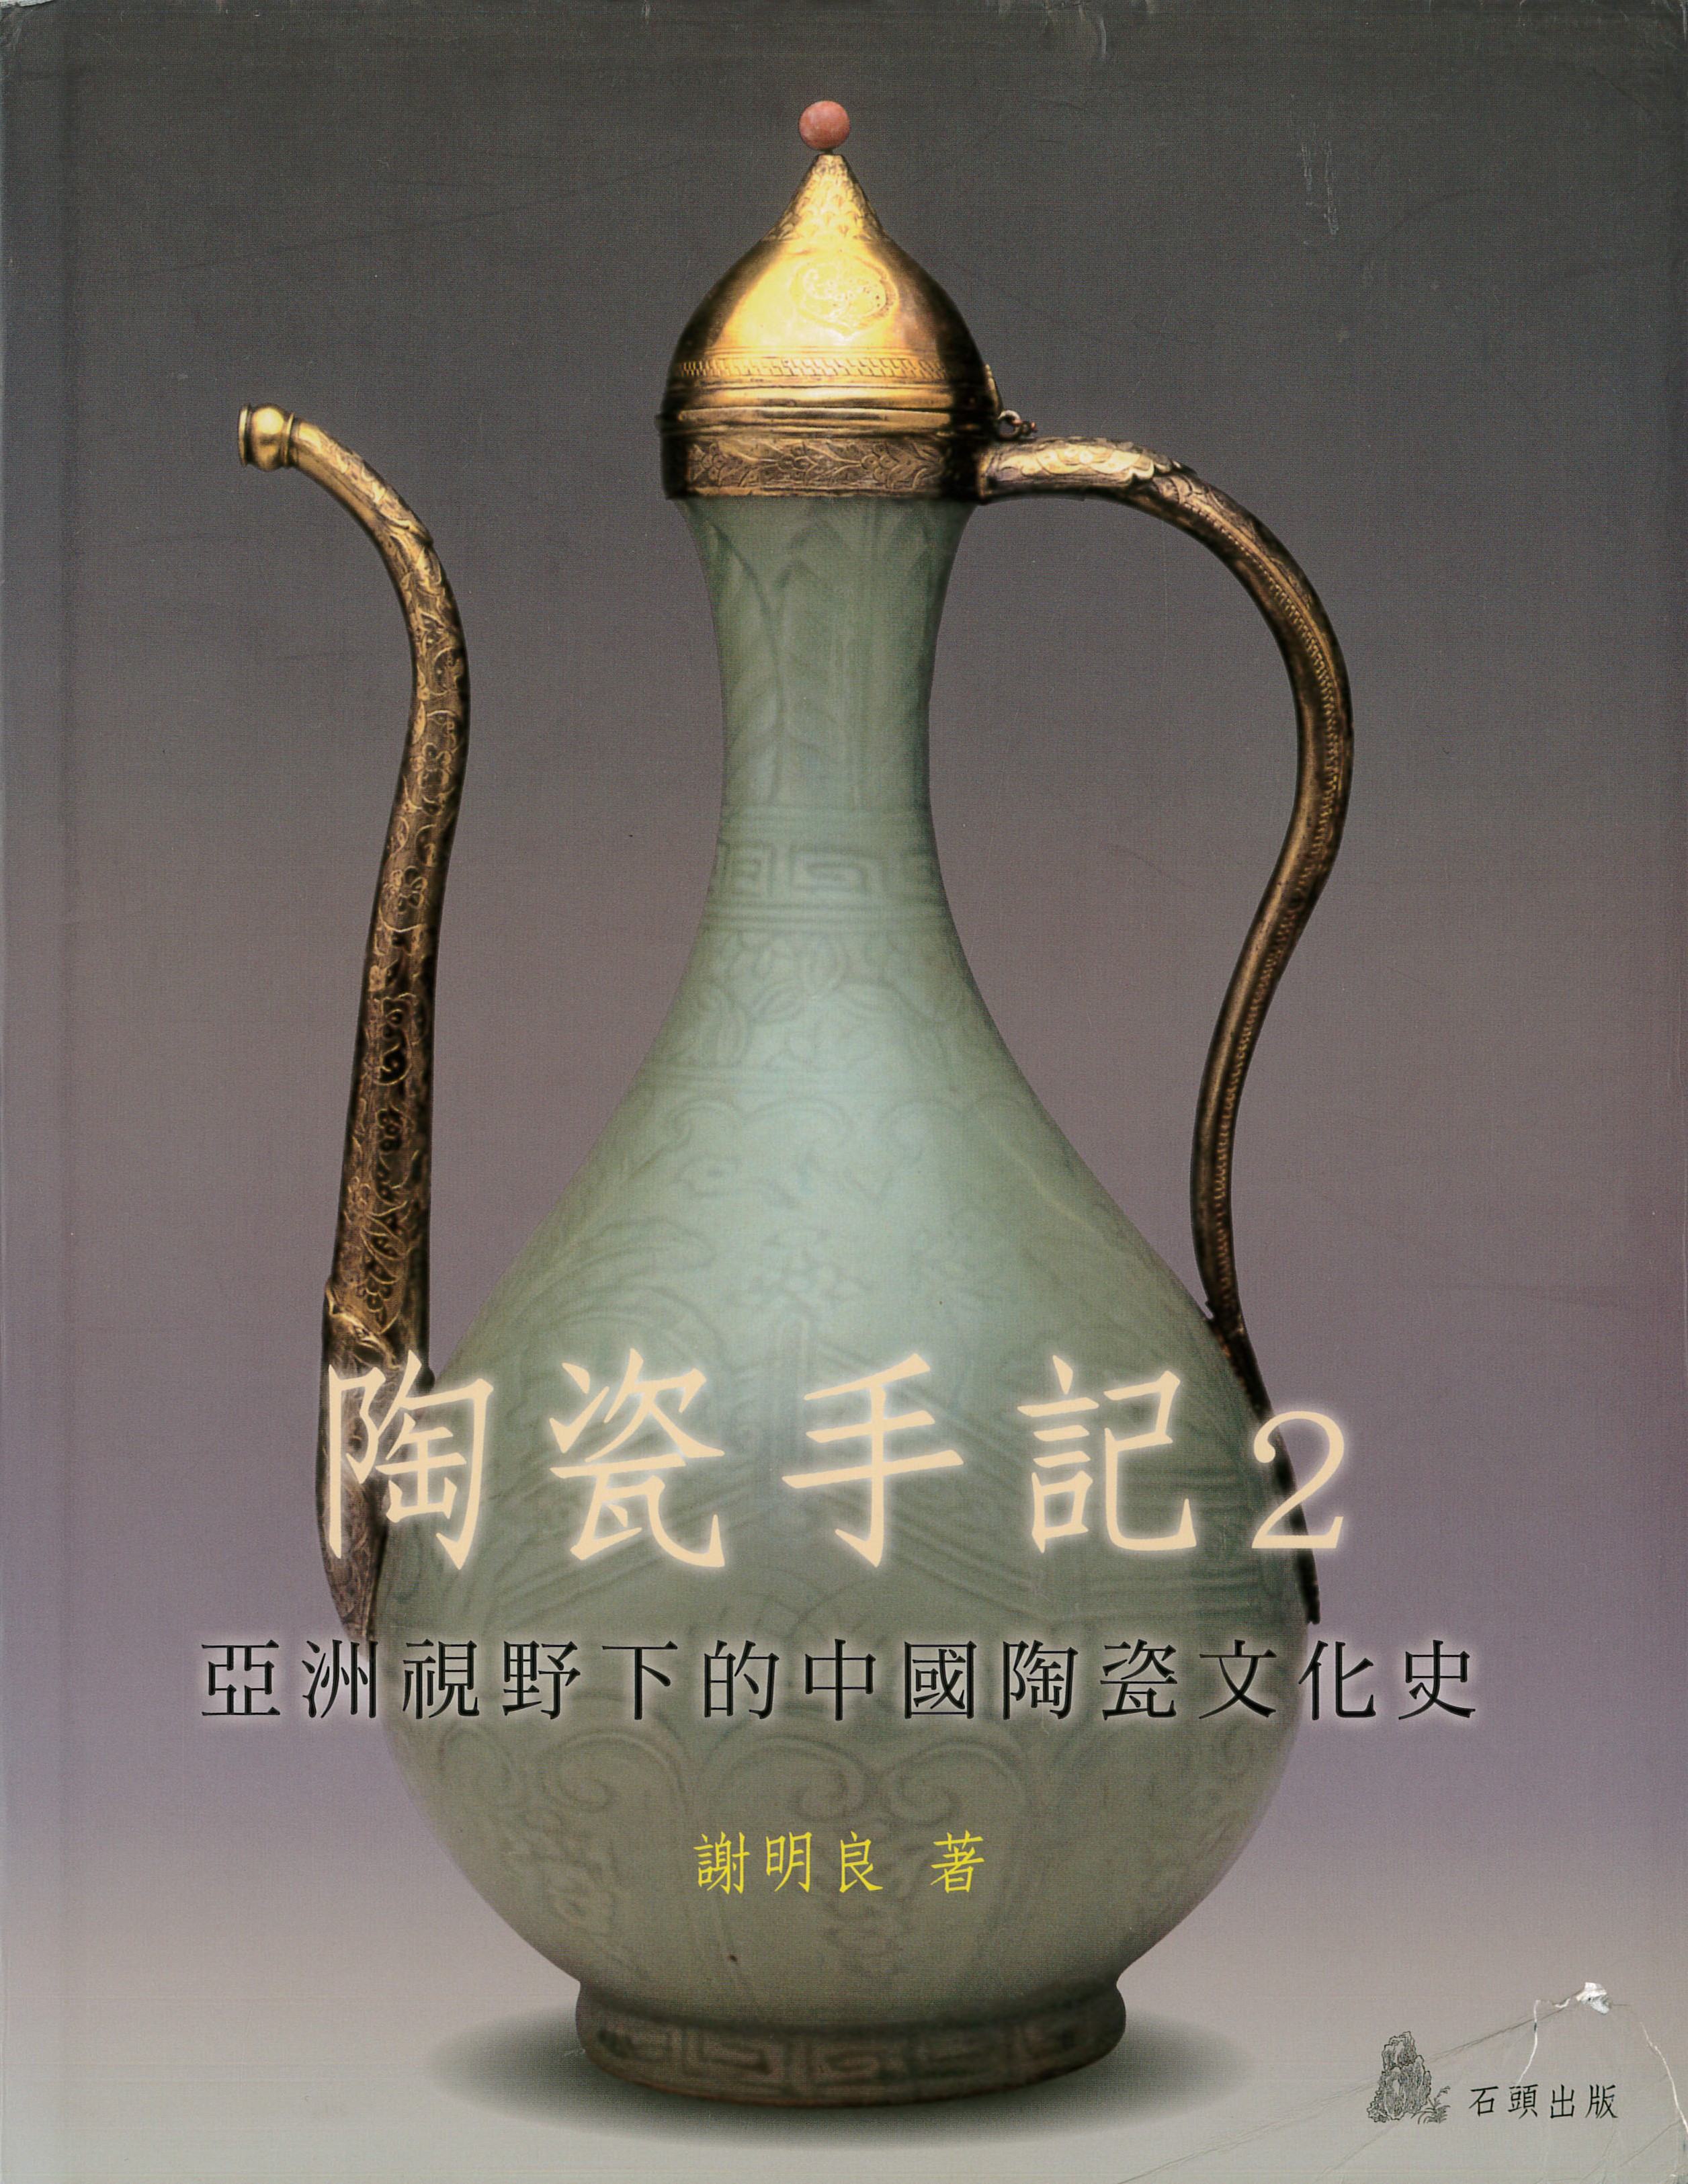 陶瓷手記2：亞洲視野下的中國陶瓷文化史 書籍封面